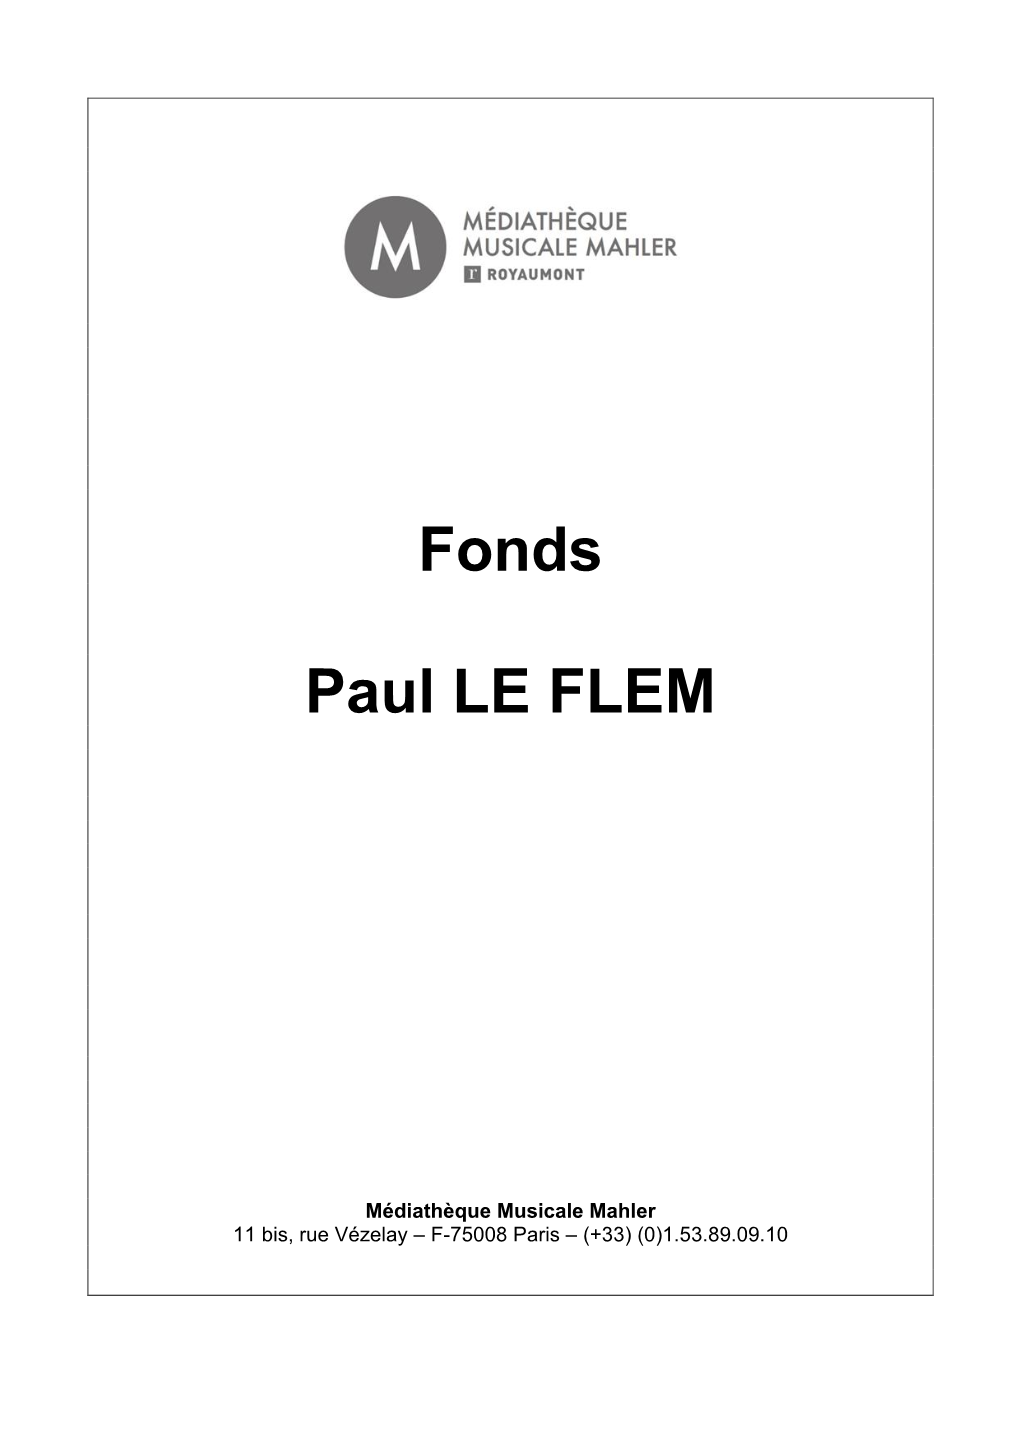 Fonds Paul Le Flem 2